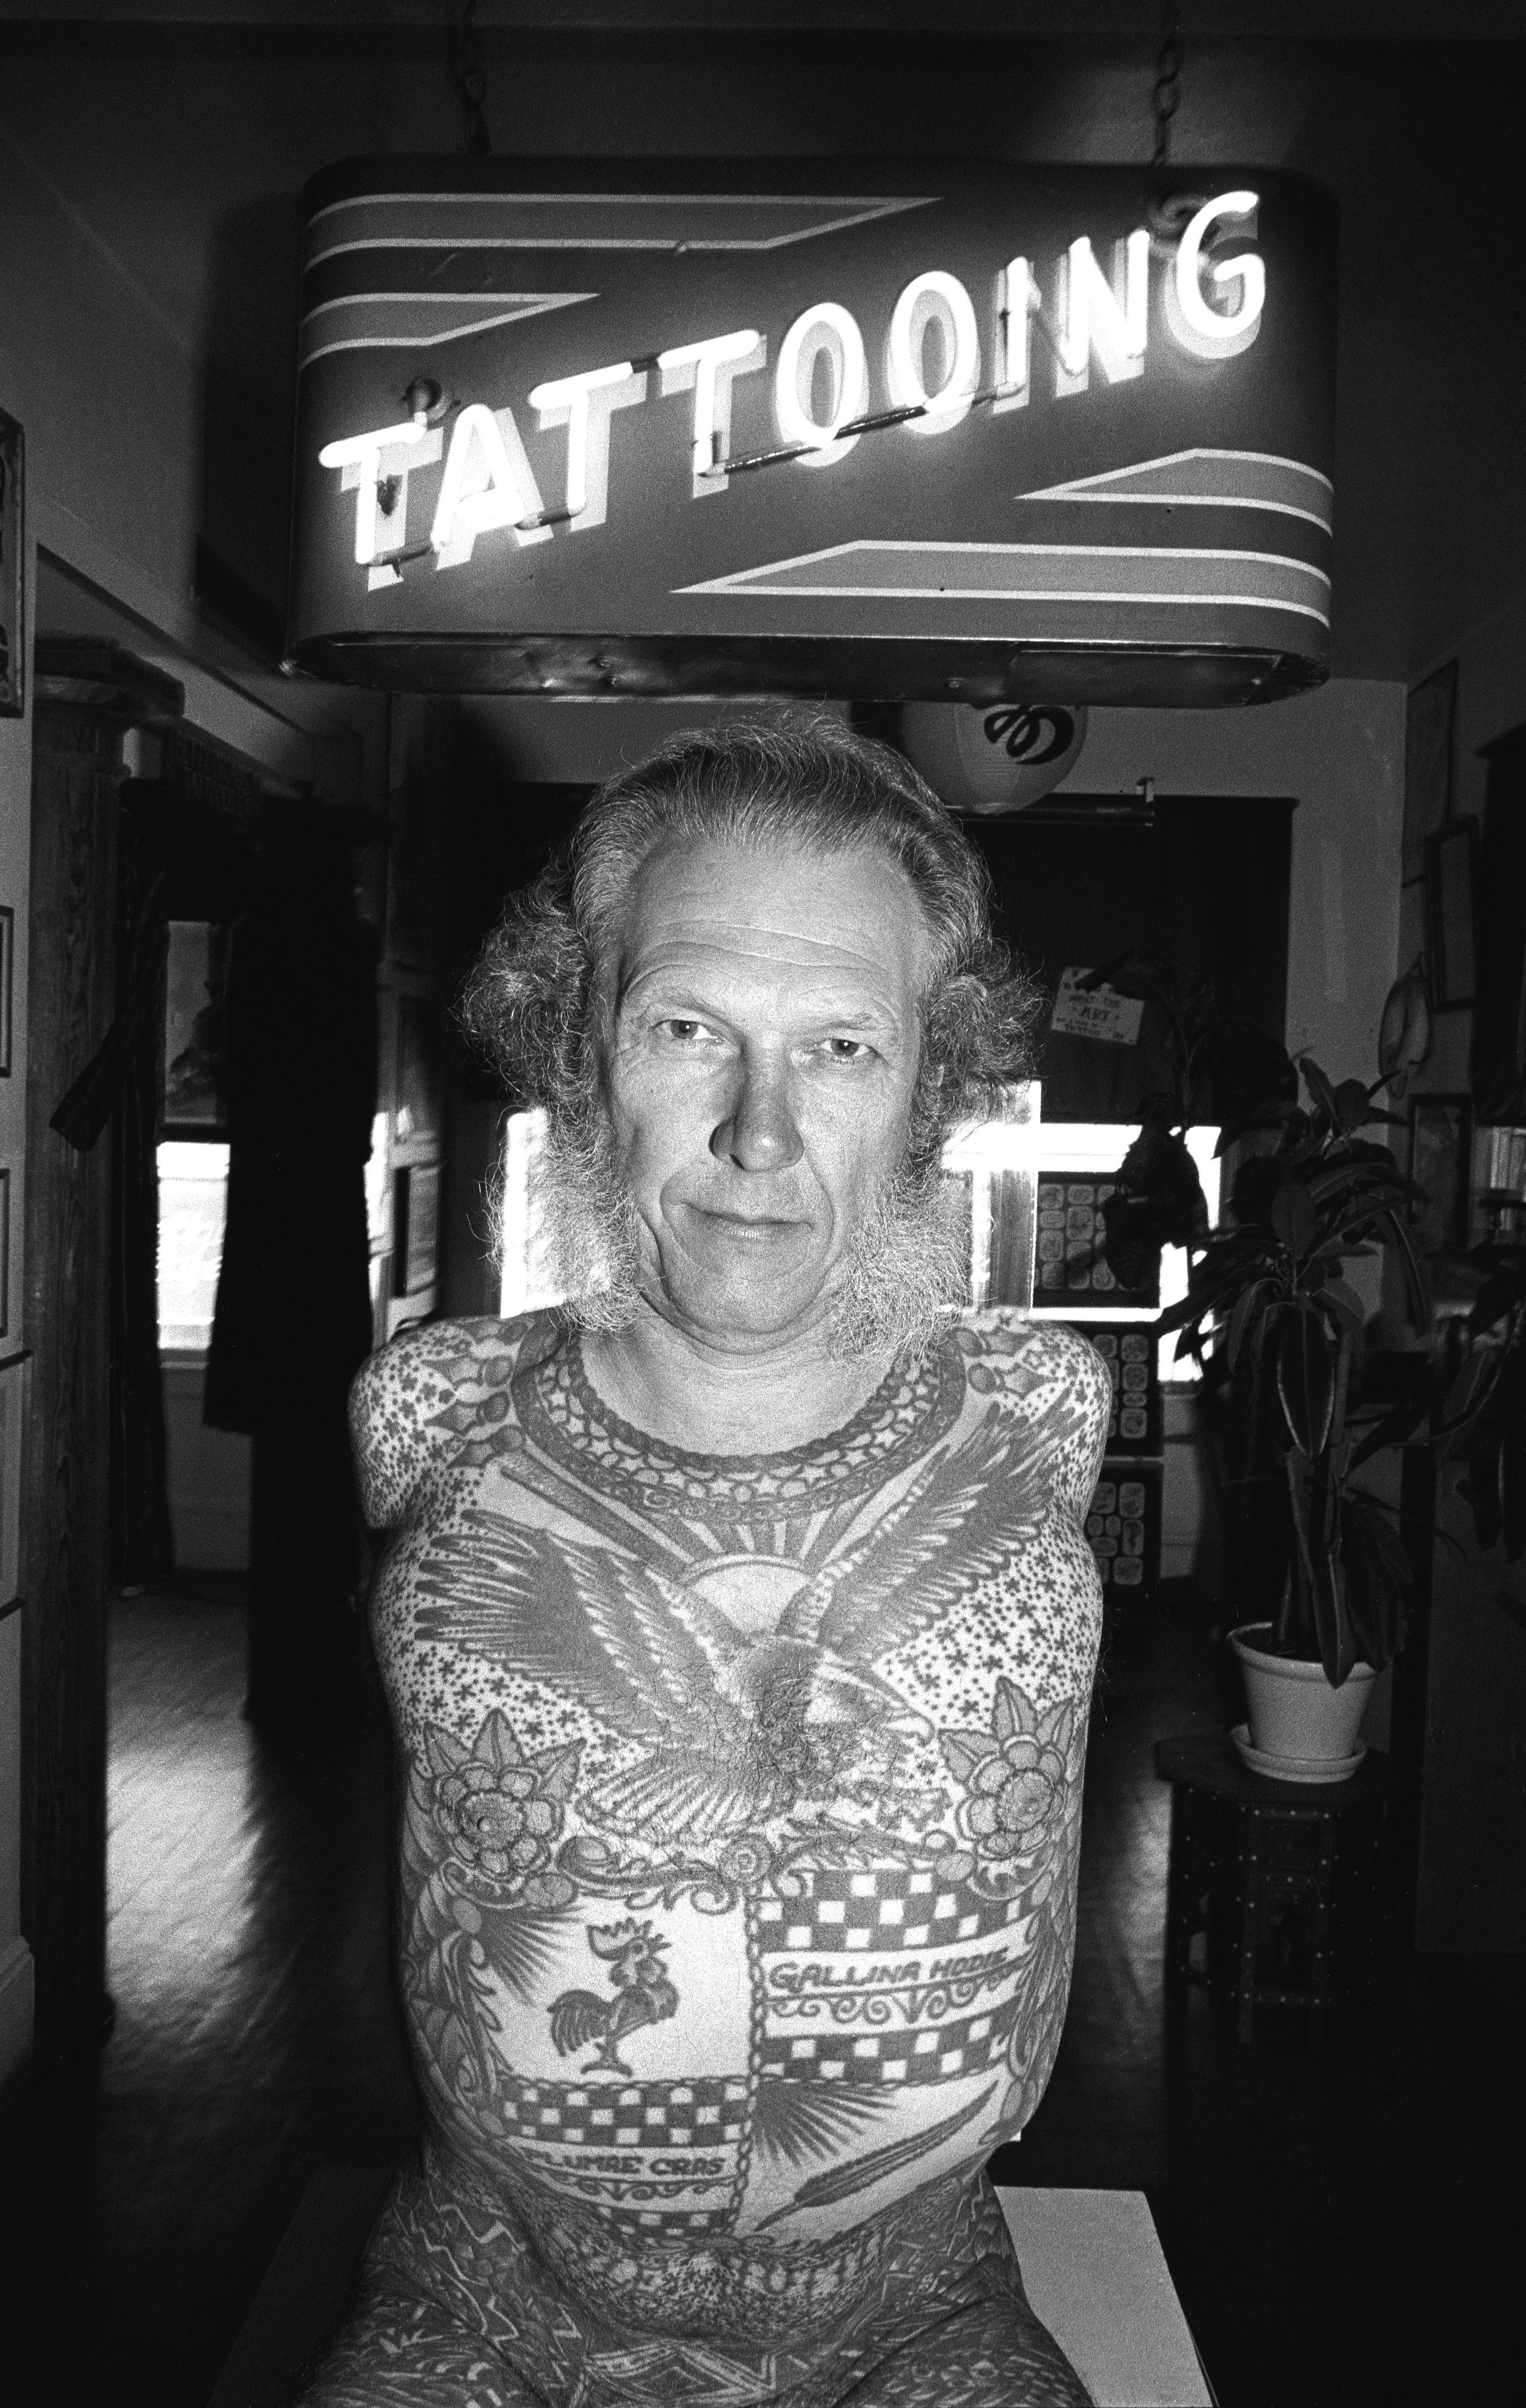  Tattoo artist Lyle Tuttle in San Francisco. 1981 